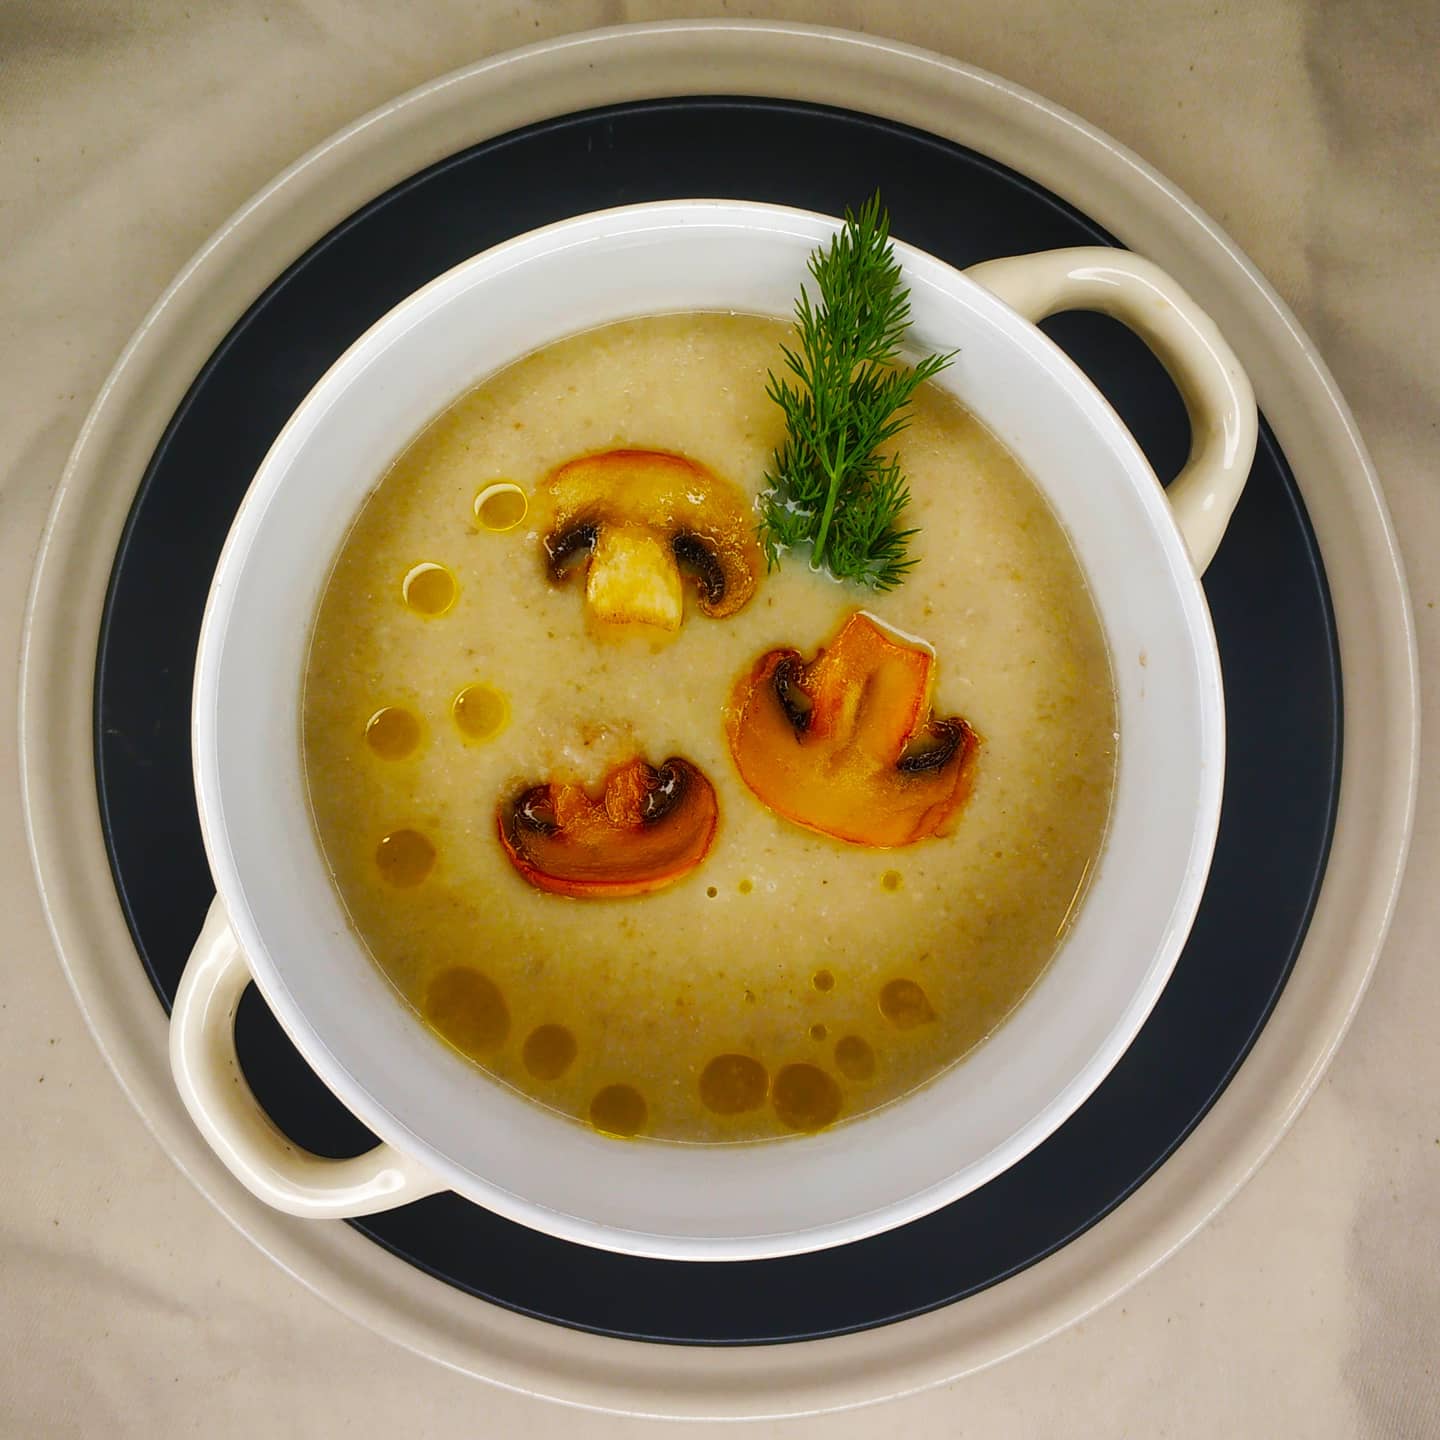 Грибной суп с макаронами на мясном бульоне - рецепт с фото